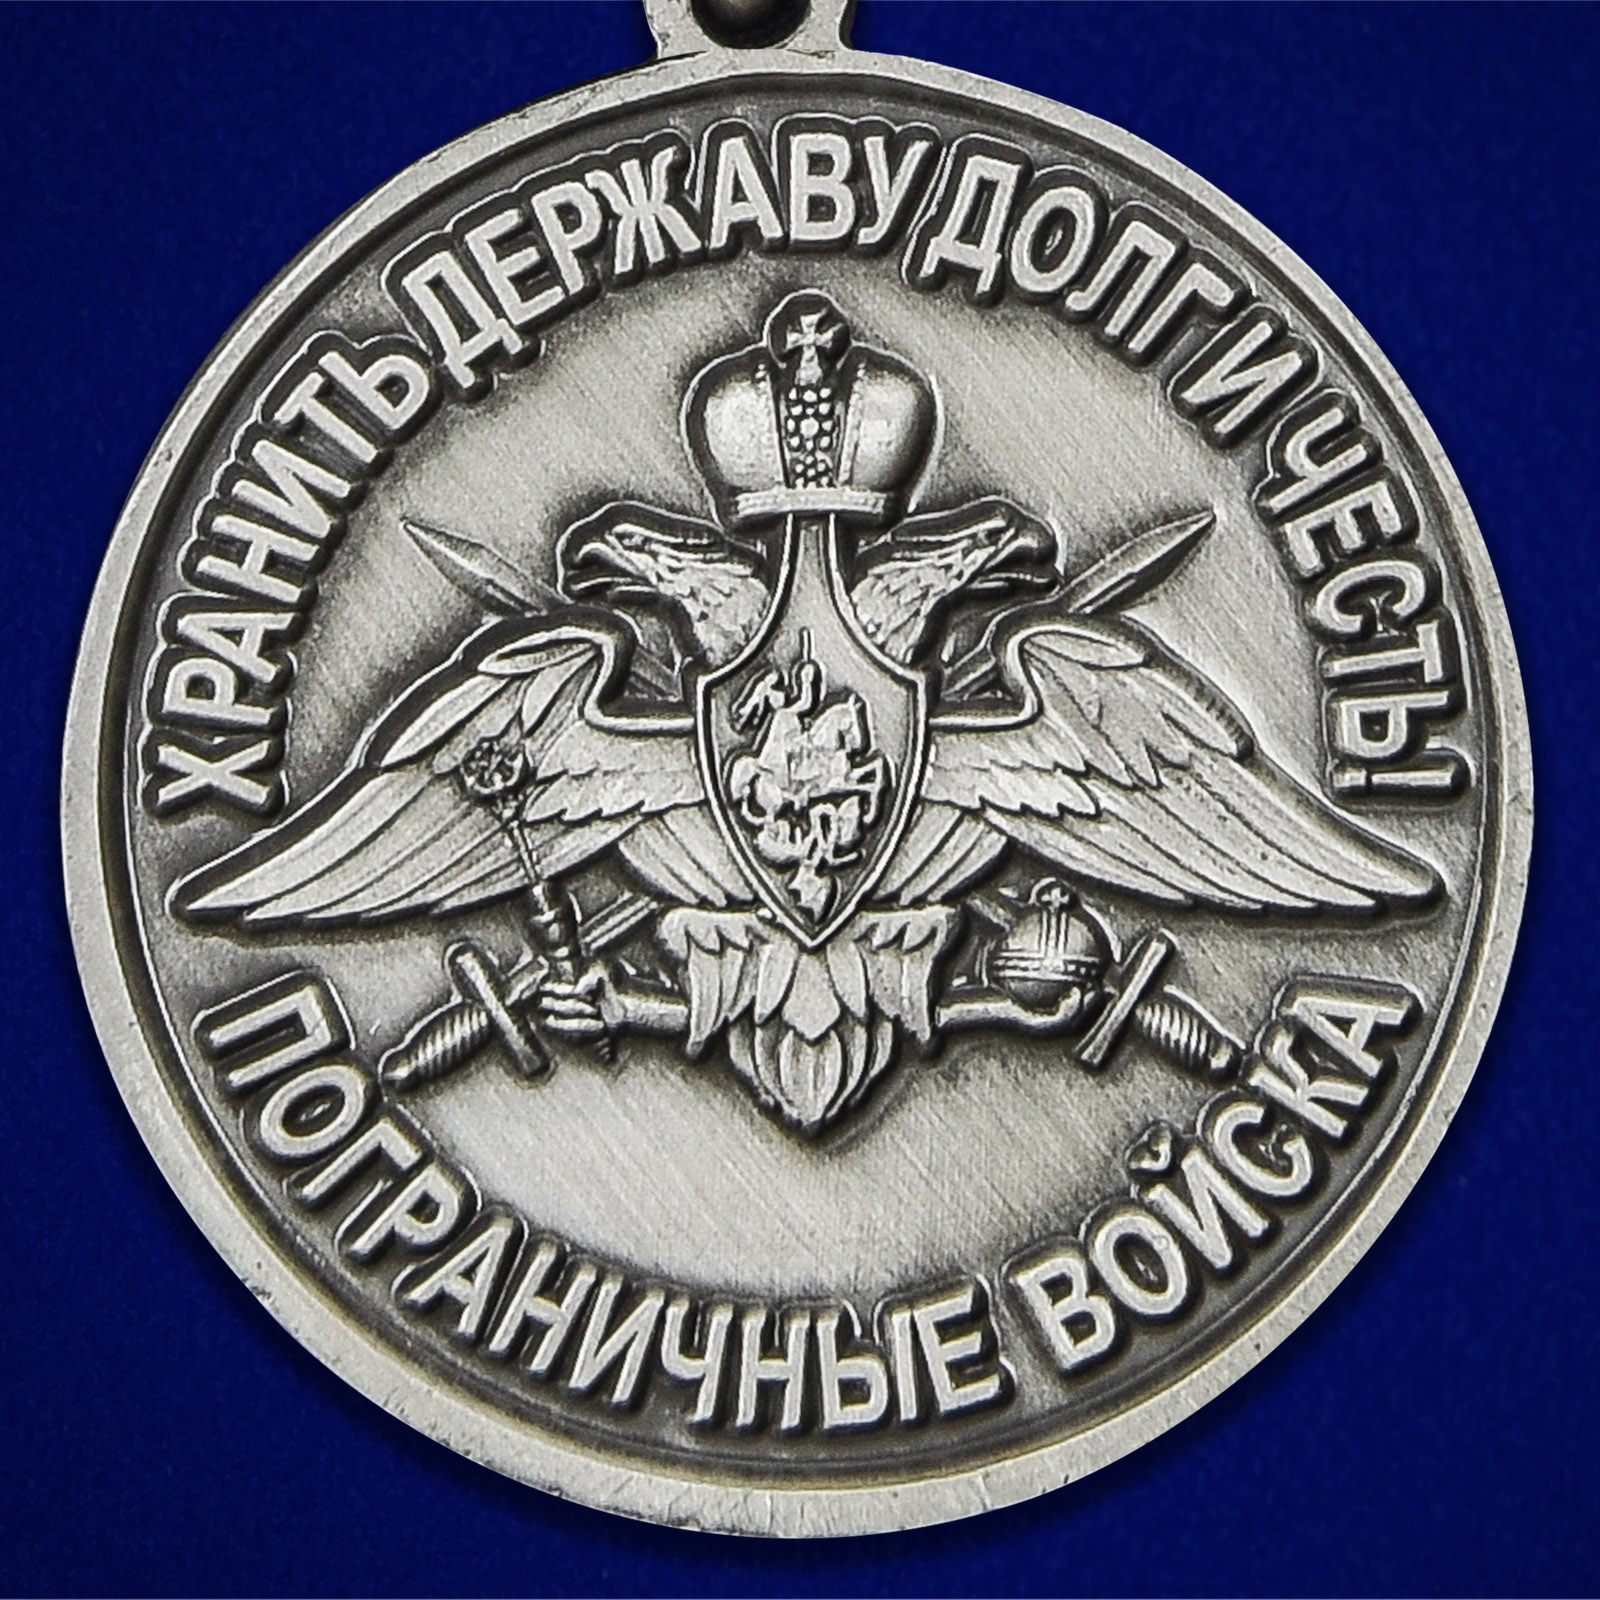 Медаль "За службу в Хорогском пограничном отряде" 